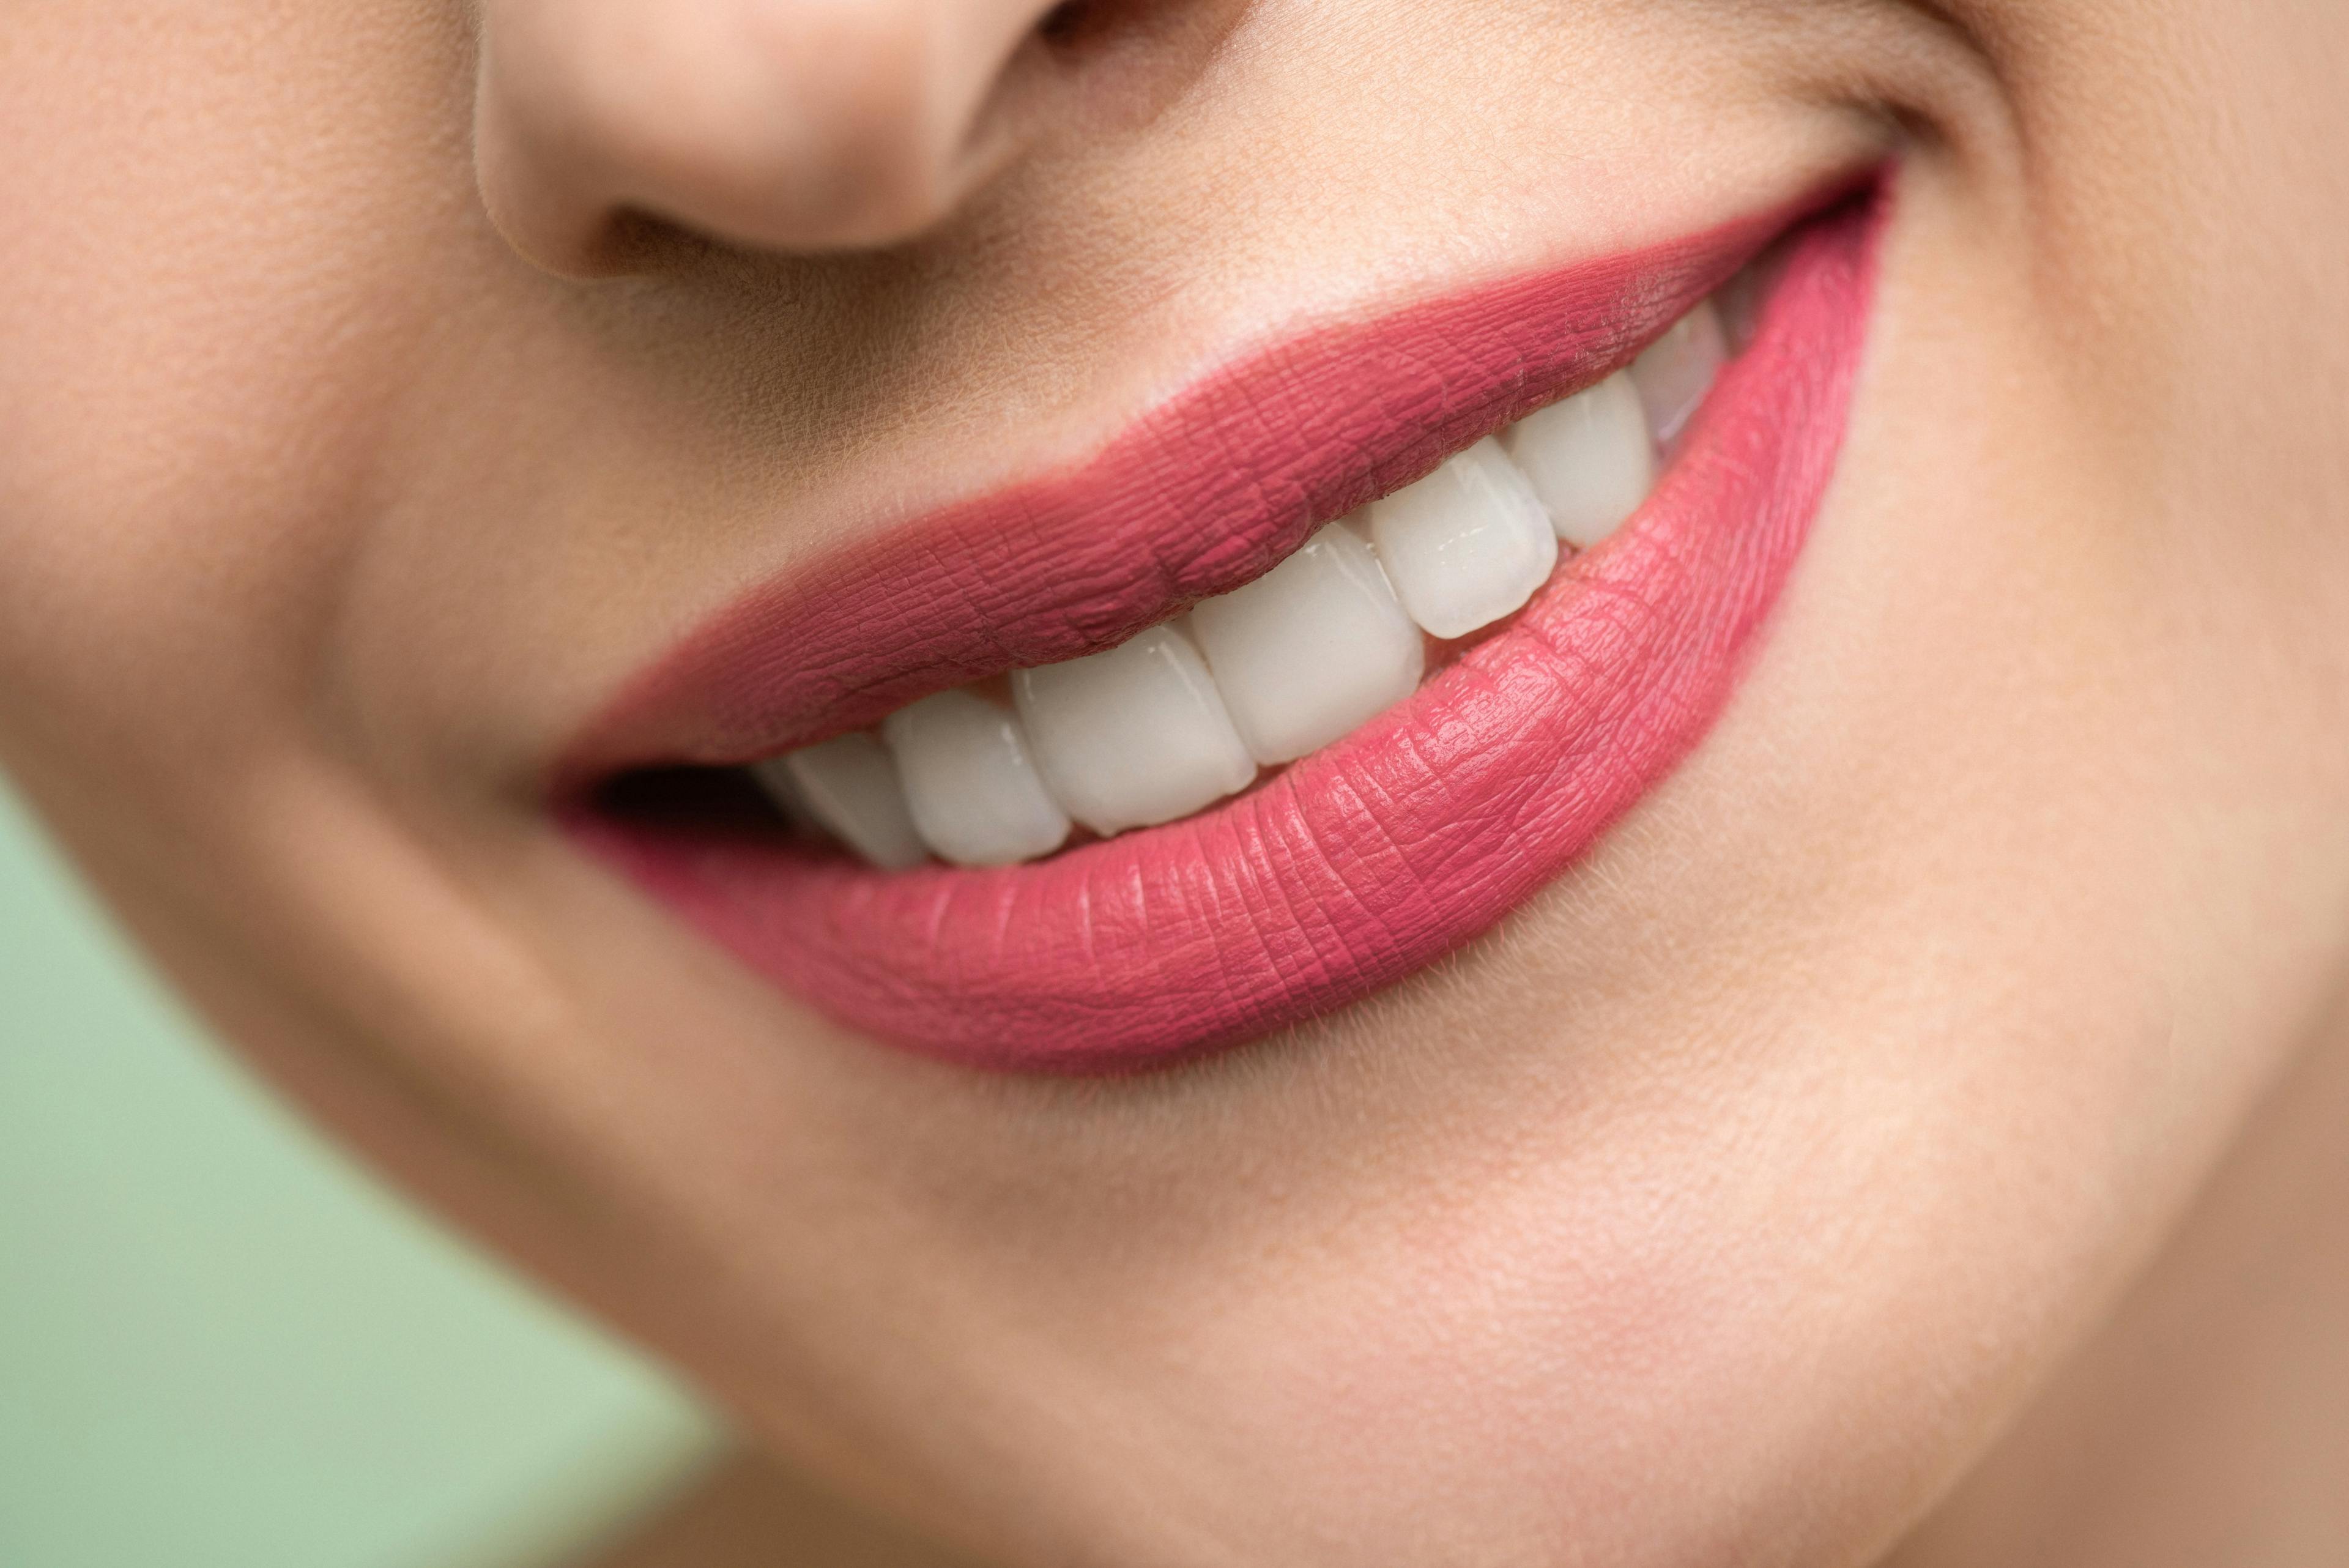 Ästhetische Zahnmedizin in Györ | Zahnarztpraxis Perident